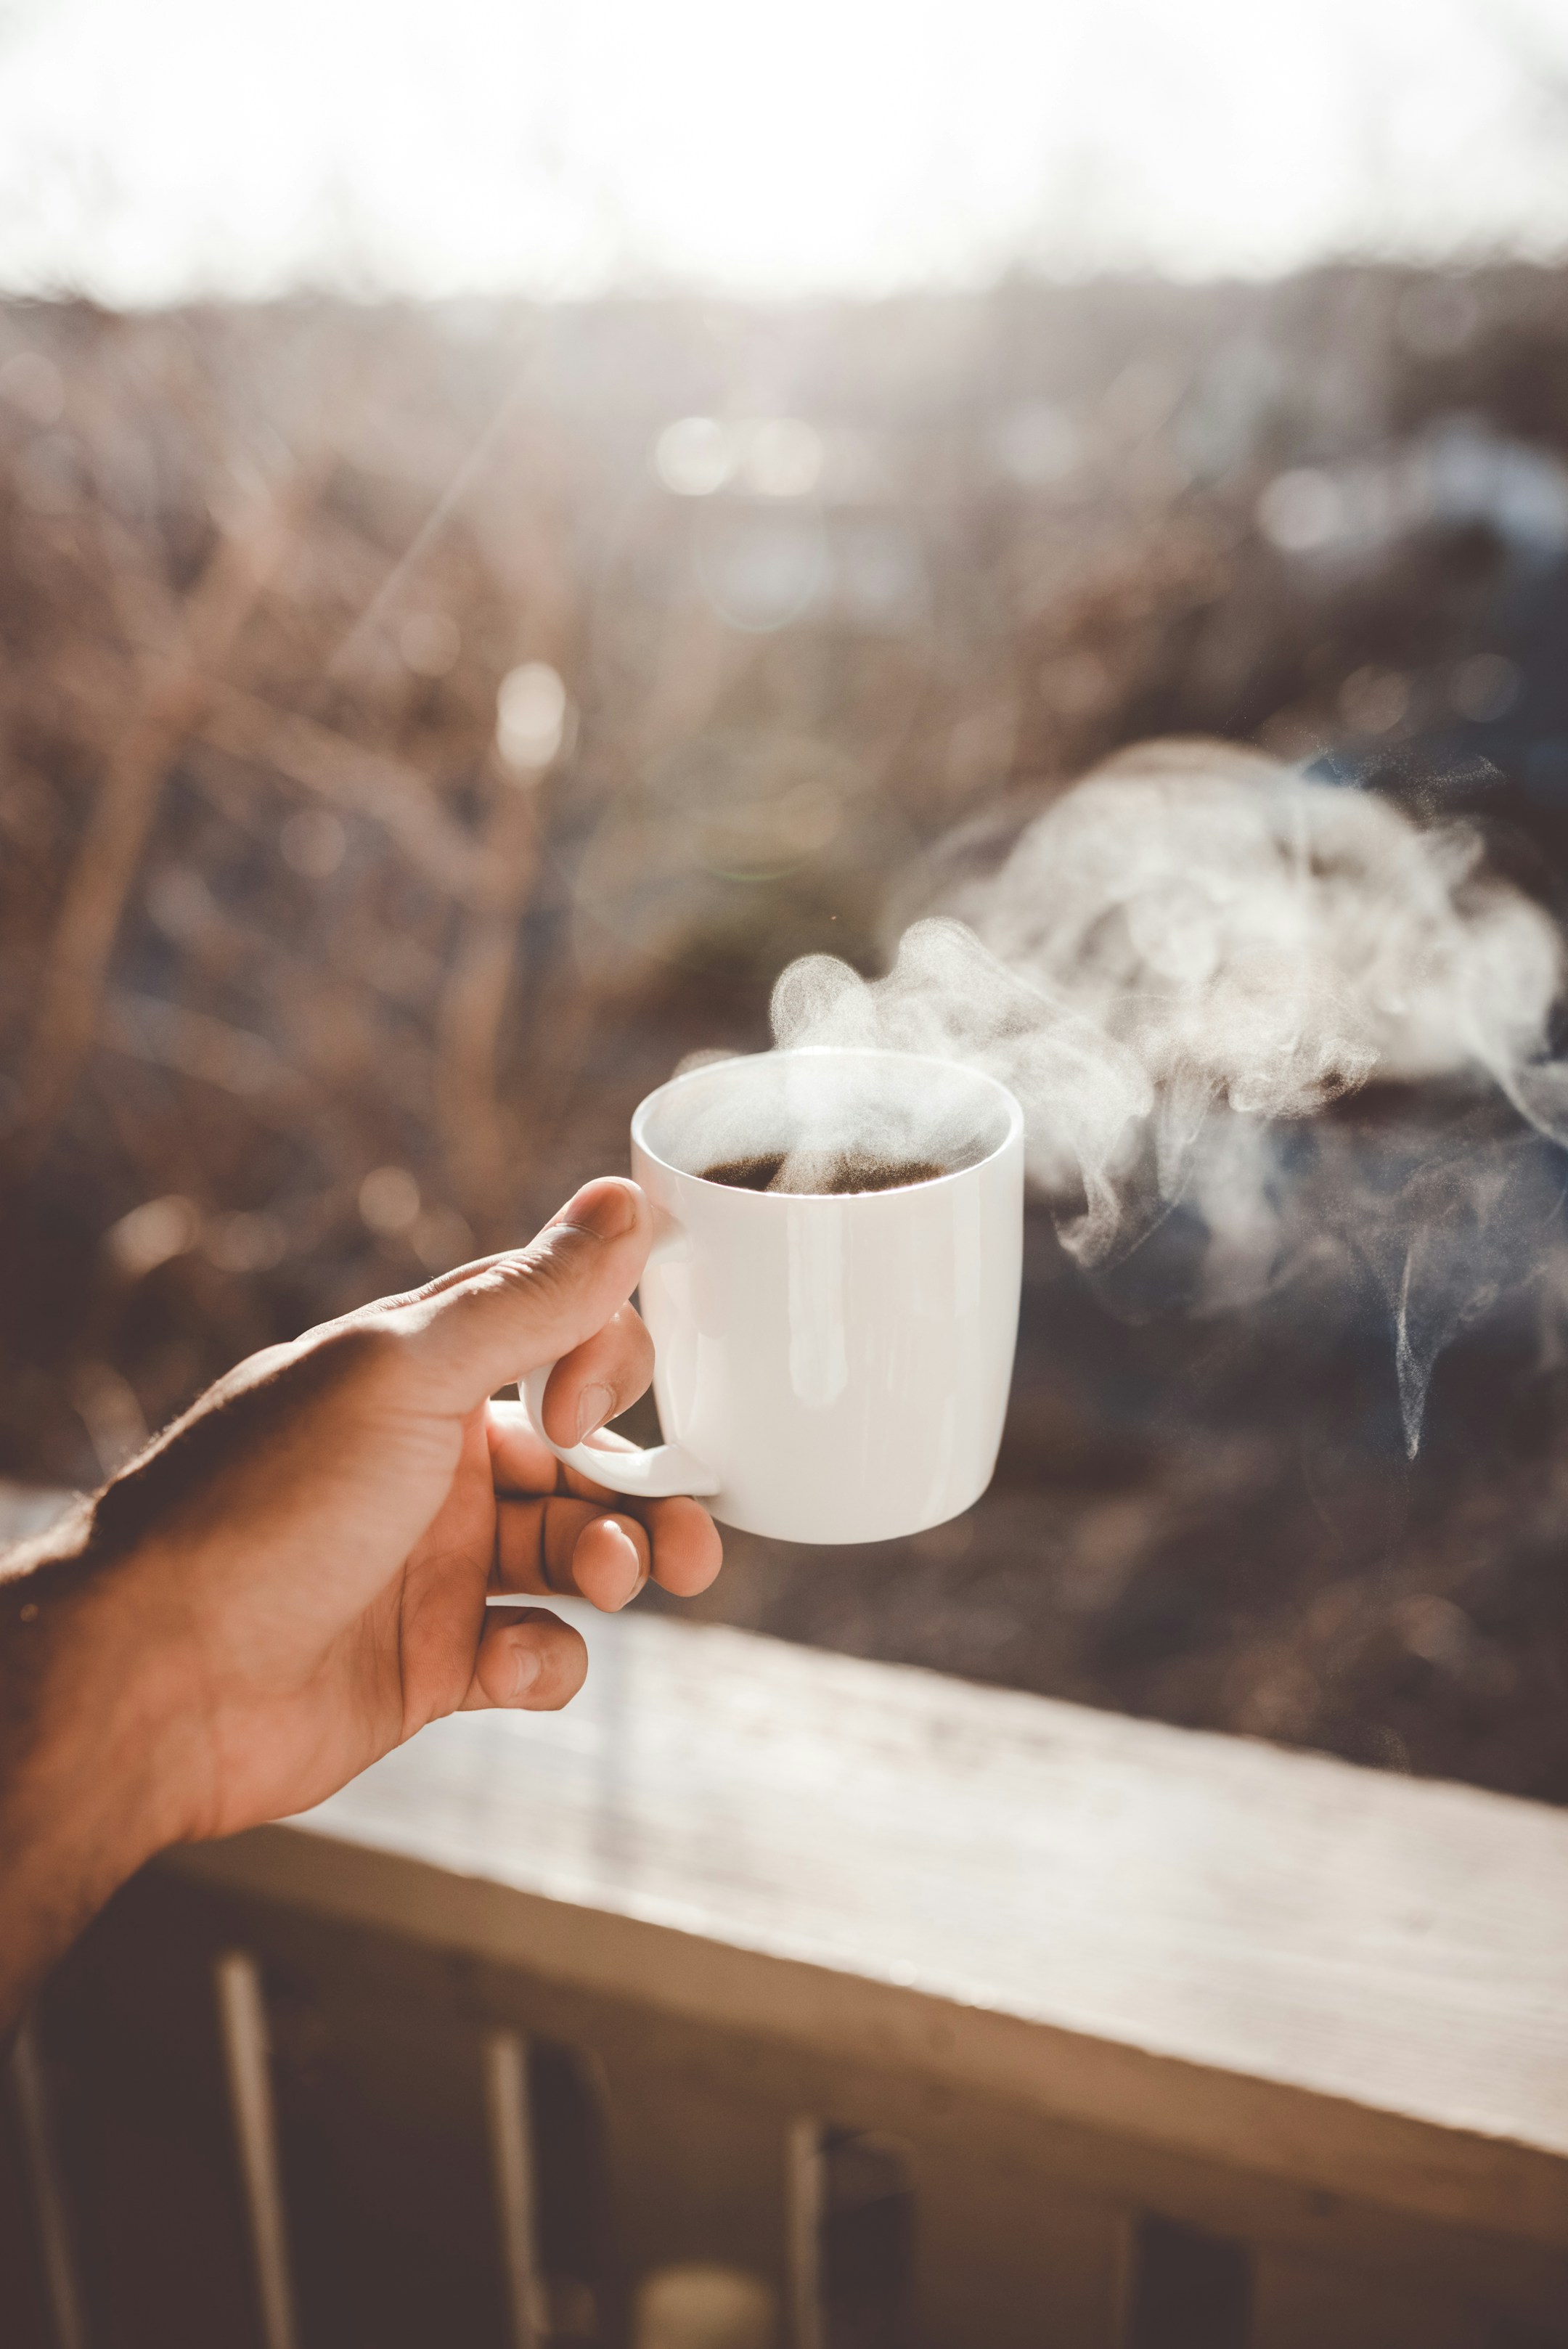 दूध वाली चाय पीना सेहत के लिए कितना अच्छा है?